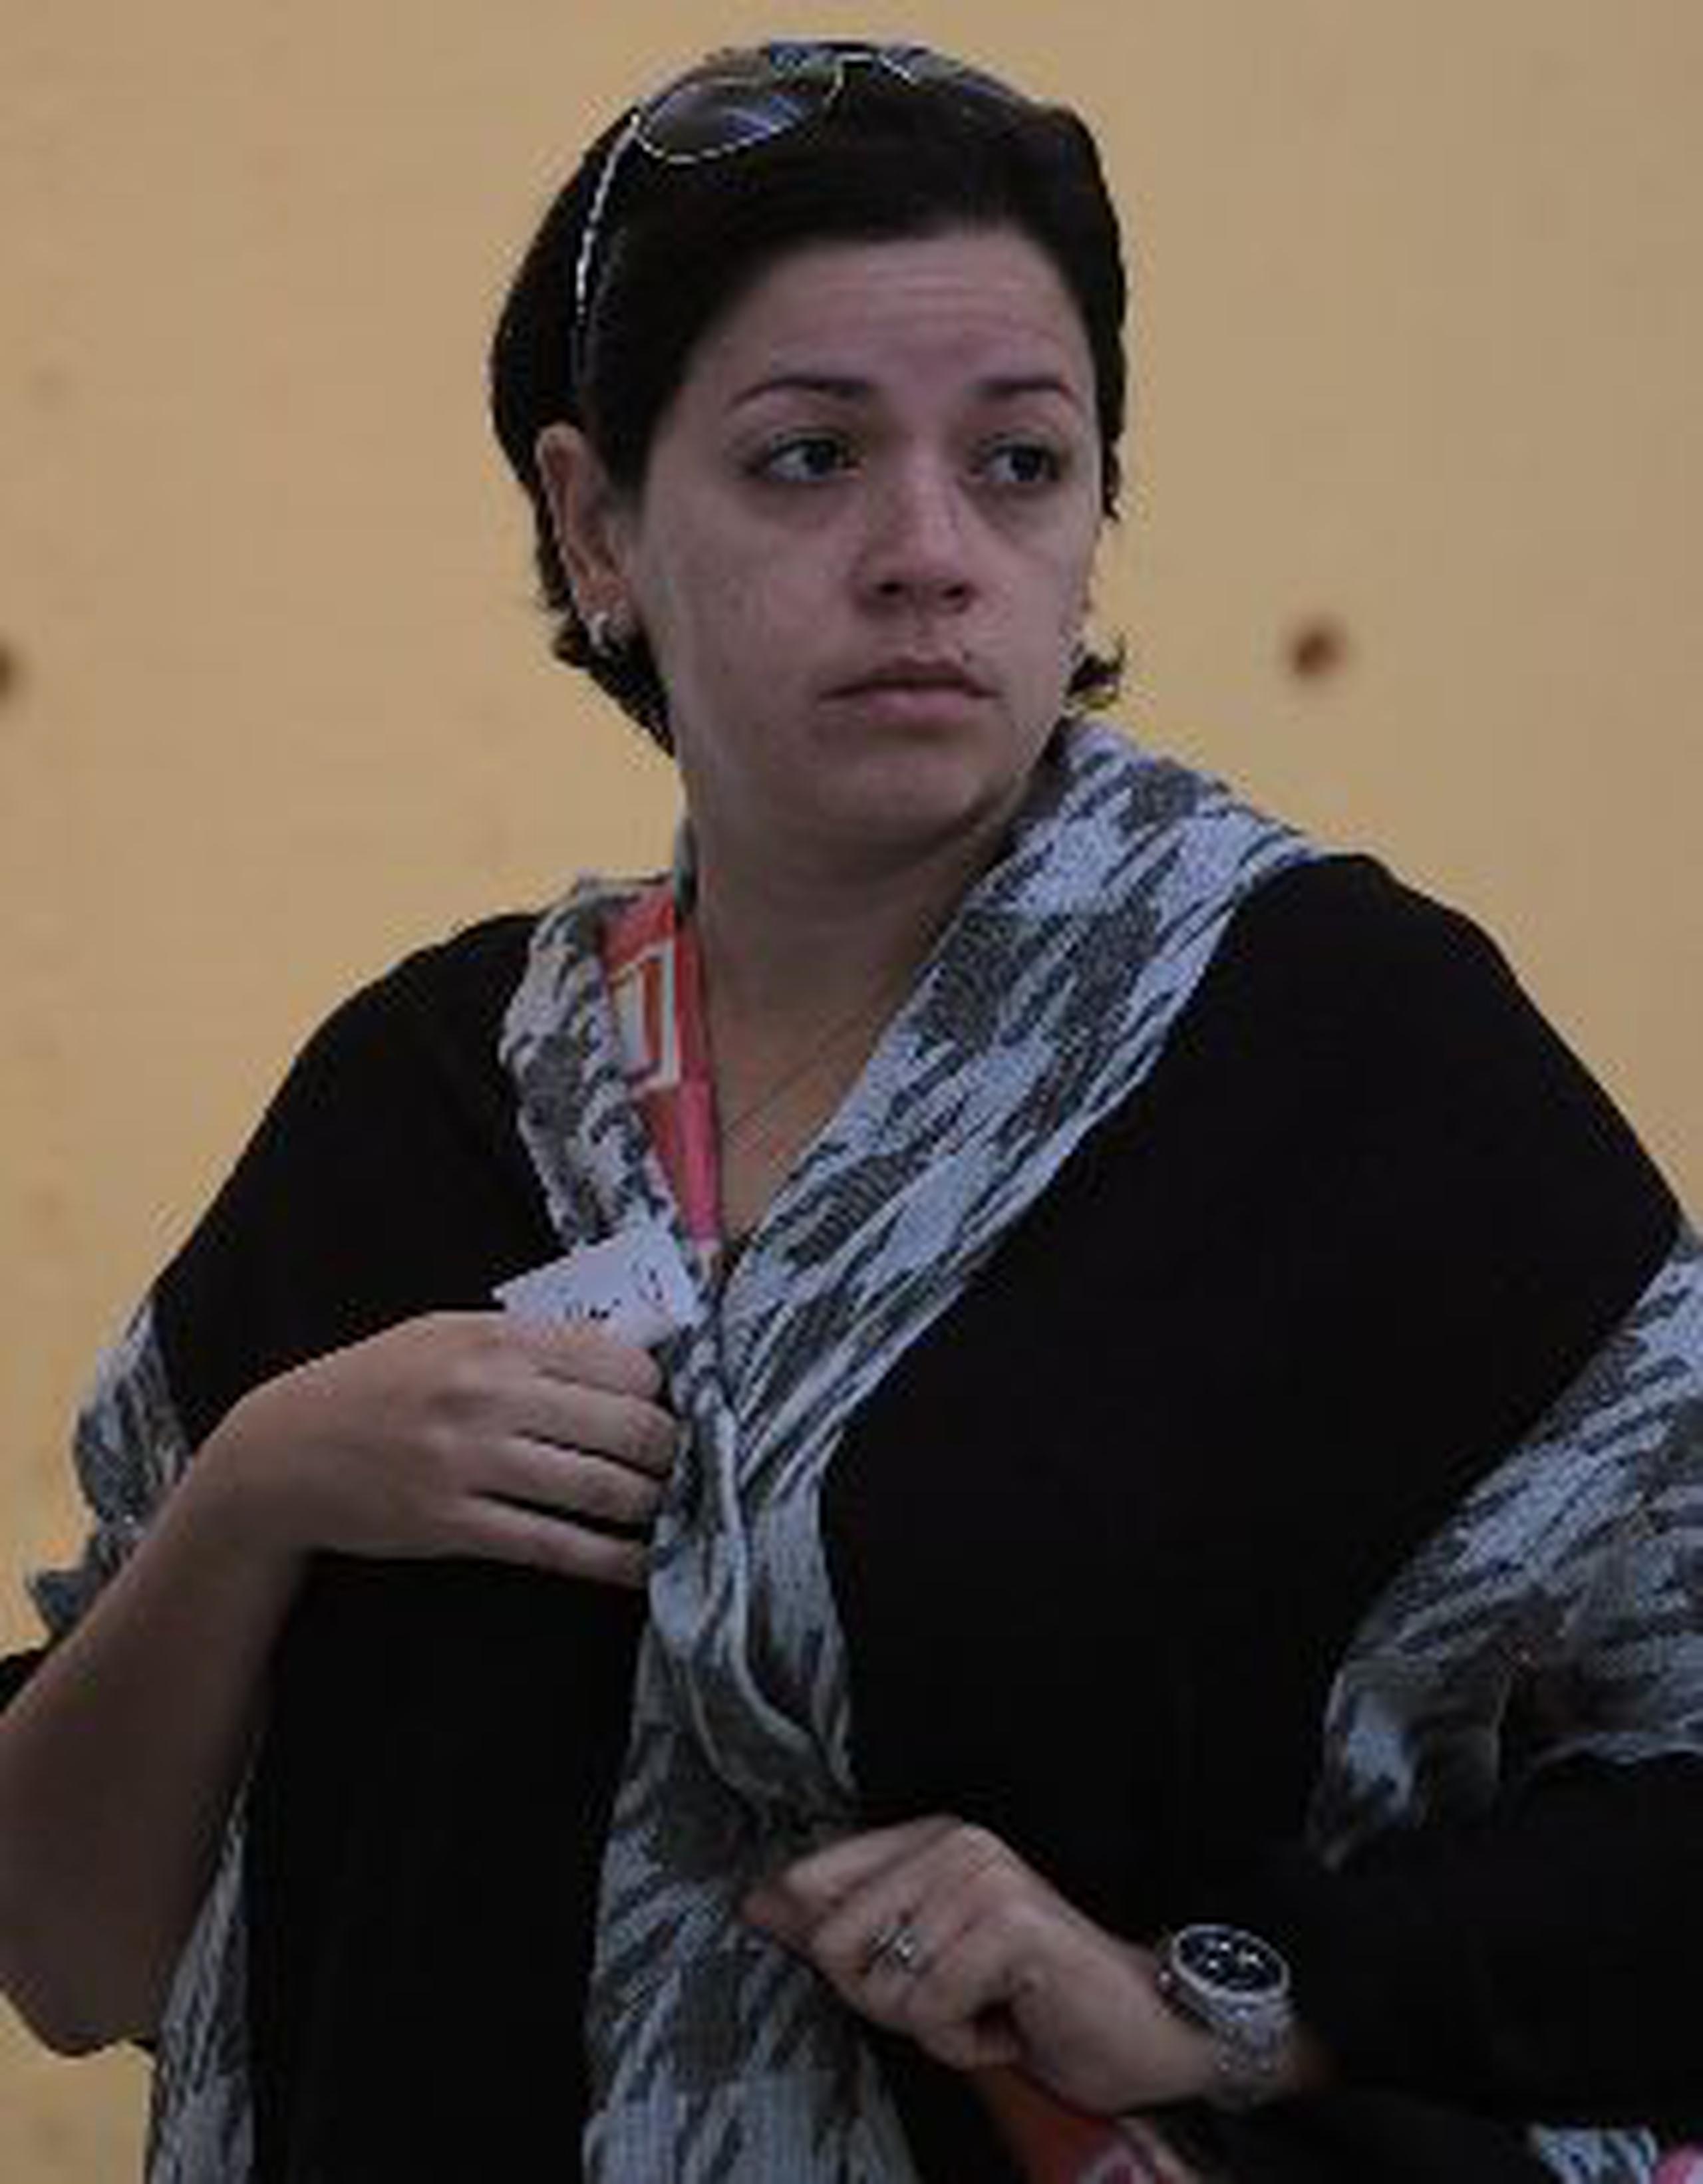 Nadya Ruiz fue parte de la delegación de Puerto Rico que participó en los Juegos Panamericanos Guadalajara 2011.&nbsp;<font color="yellow">(teresa.canino@gfrmedia.com)</font>